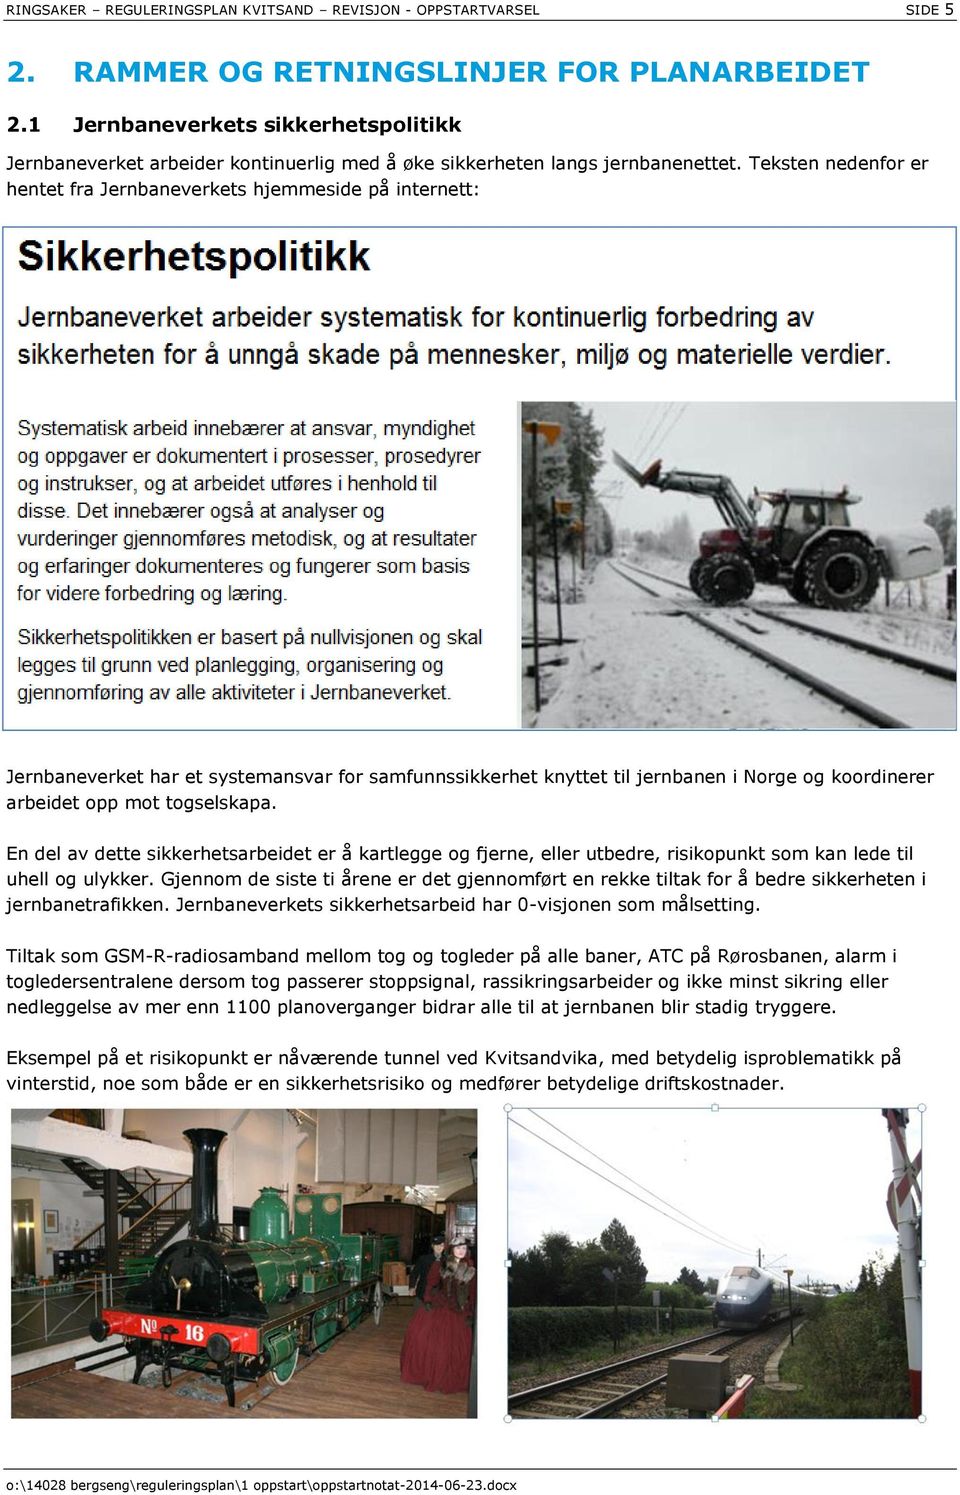 Teksten nedenfor er hentet fra Jernbaneverkets hjemmeside på internett: Jernbaneverket har et systemansvar for samfunnssikkerhet knyttet til jernbanen i Norge og koordinerer arbeidet opp mot